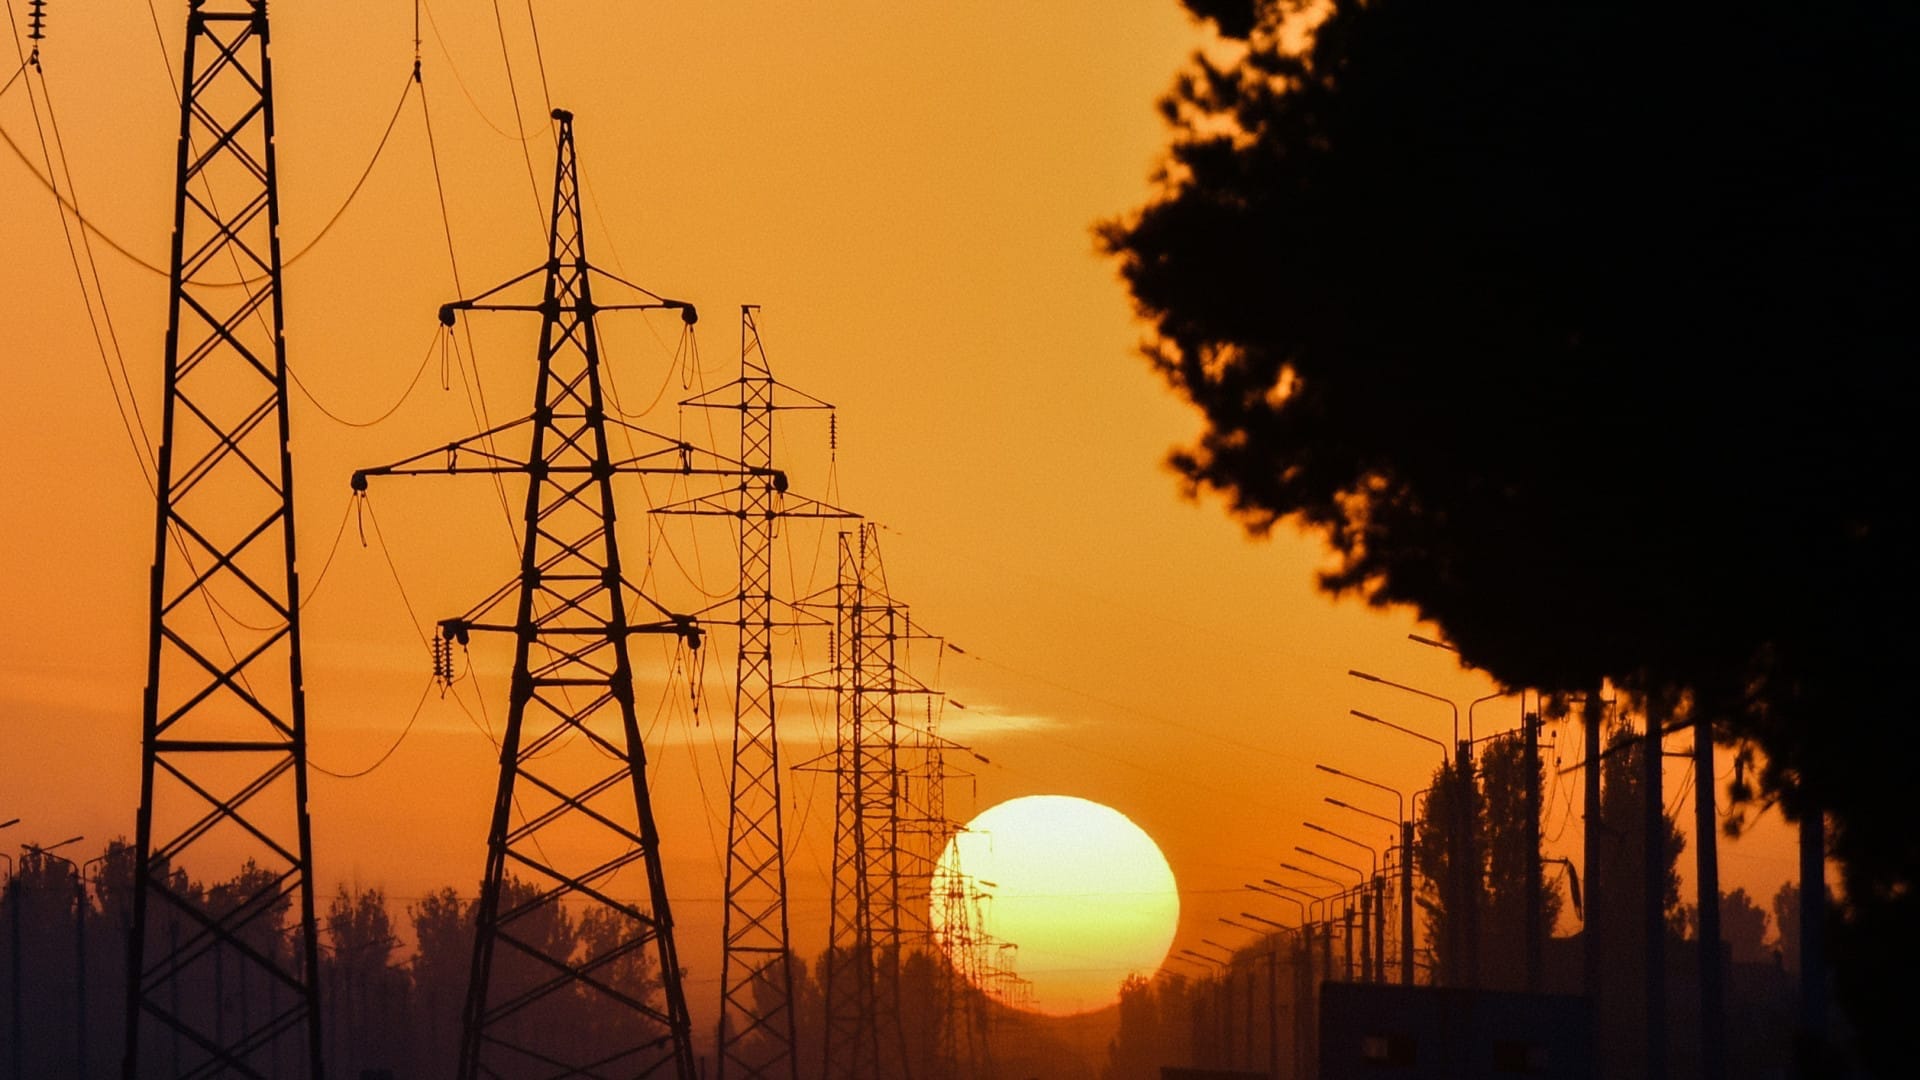 К 2050 году КР понадобится 10 тысяч мегаватт мощности электроэнергии – Навид Накви